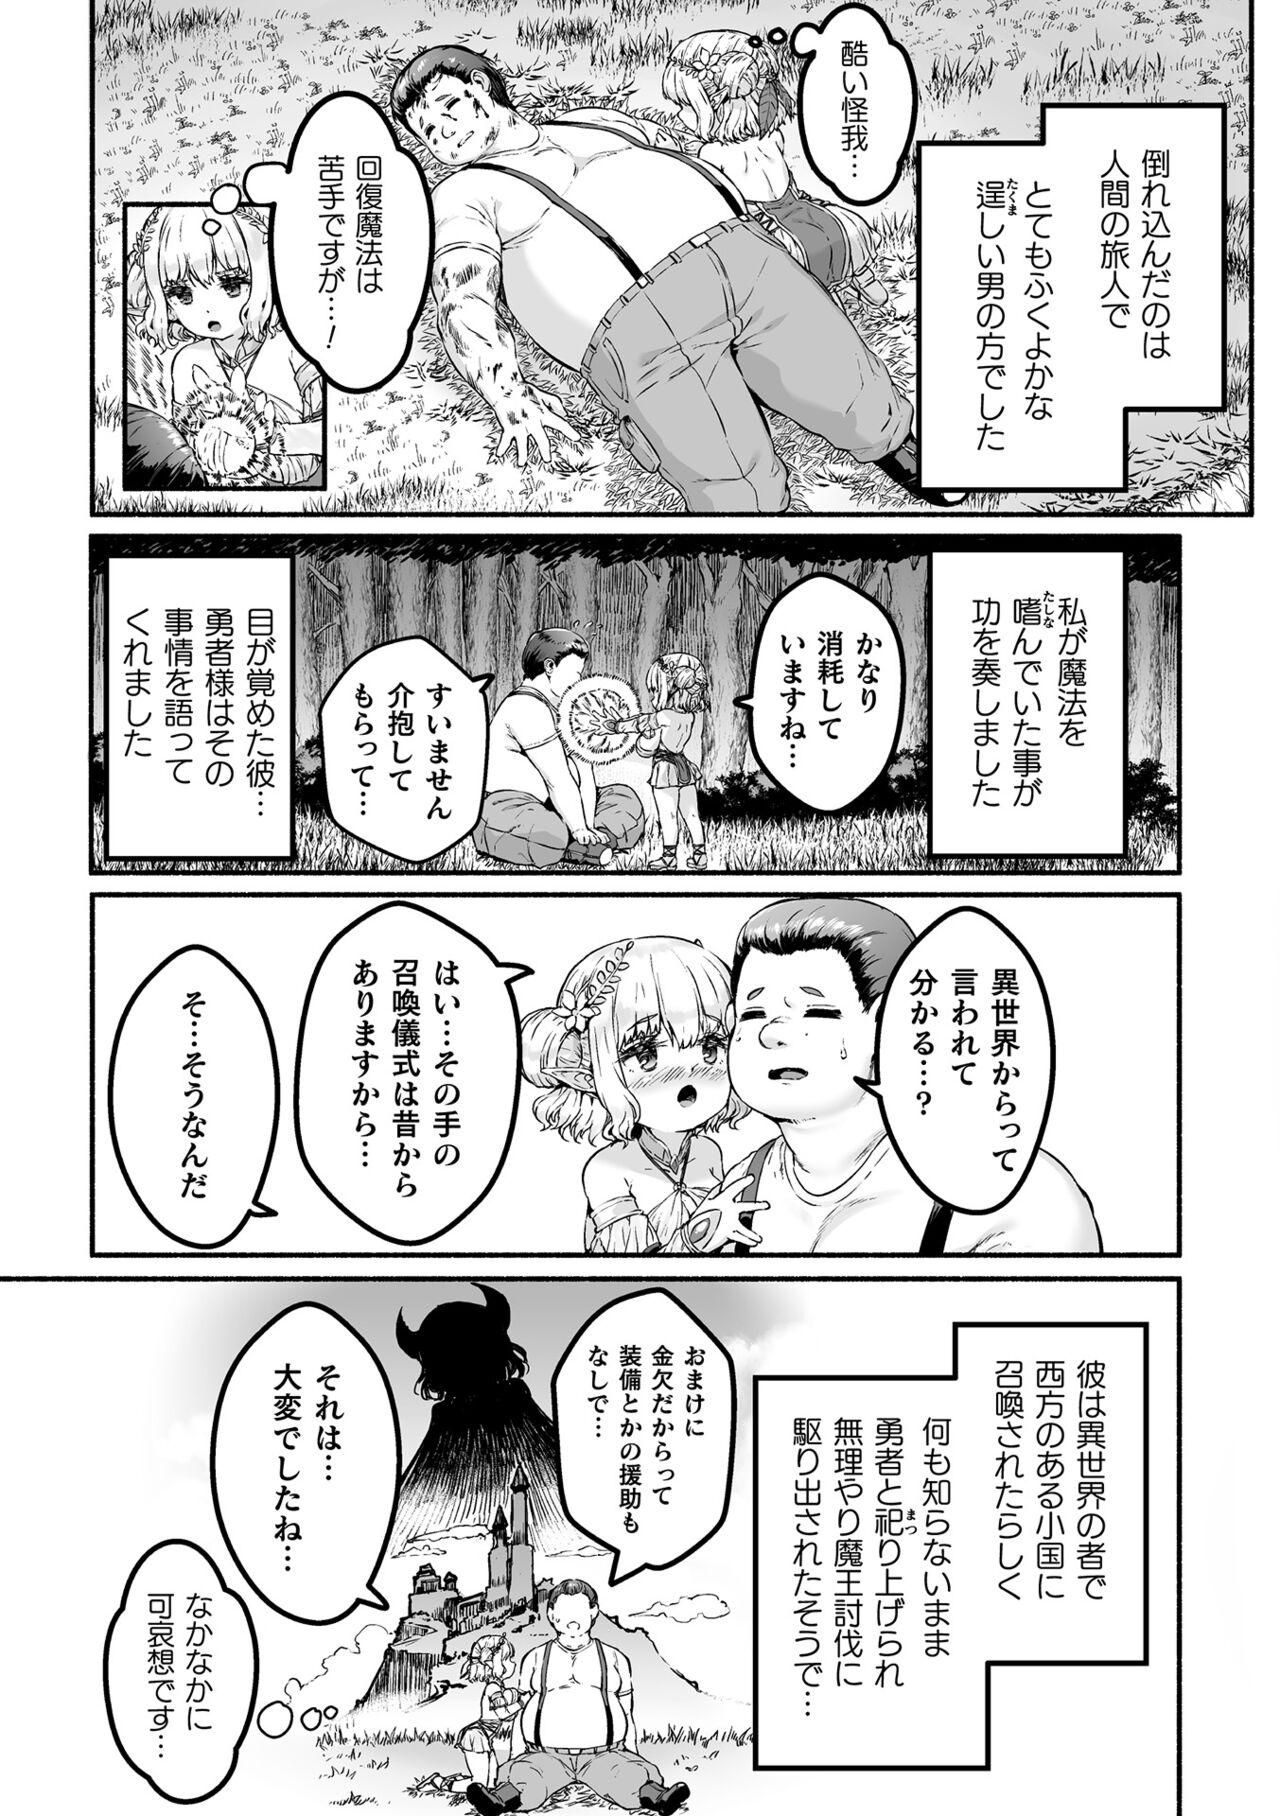 [Sakimori Dan] Chitchai × dekkai × fantasy ~ iyashino Erufu to yowa yowa maō o habera sete ~ dai 1-wa 4